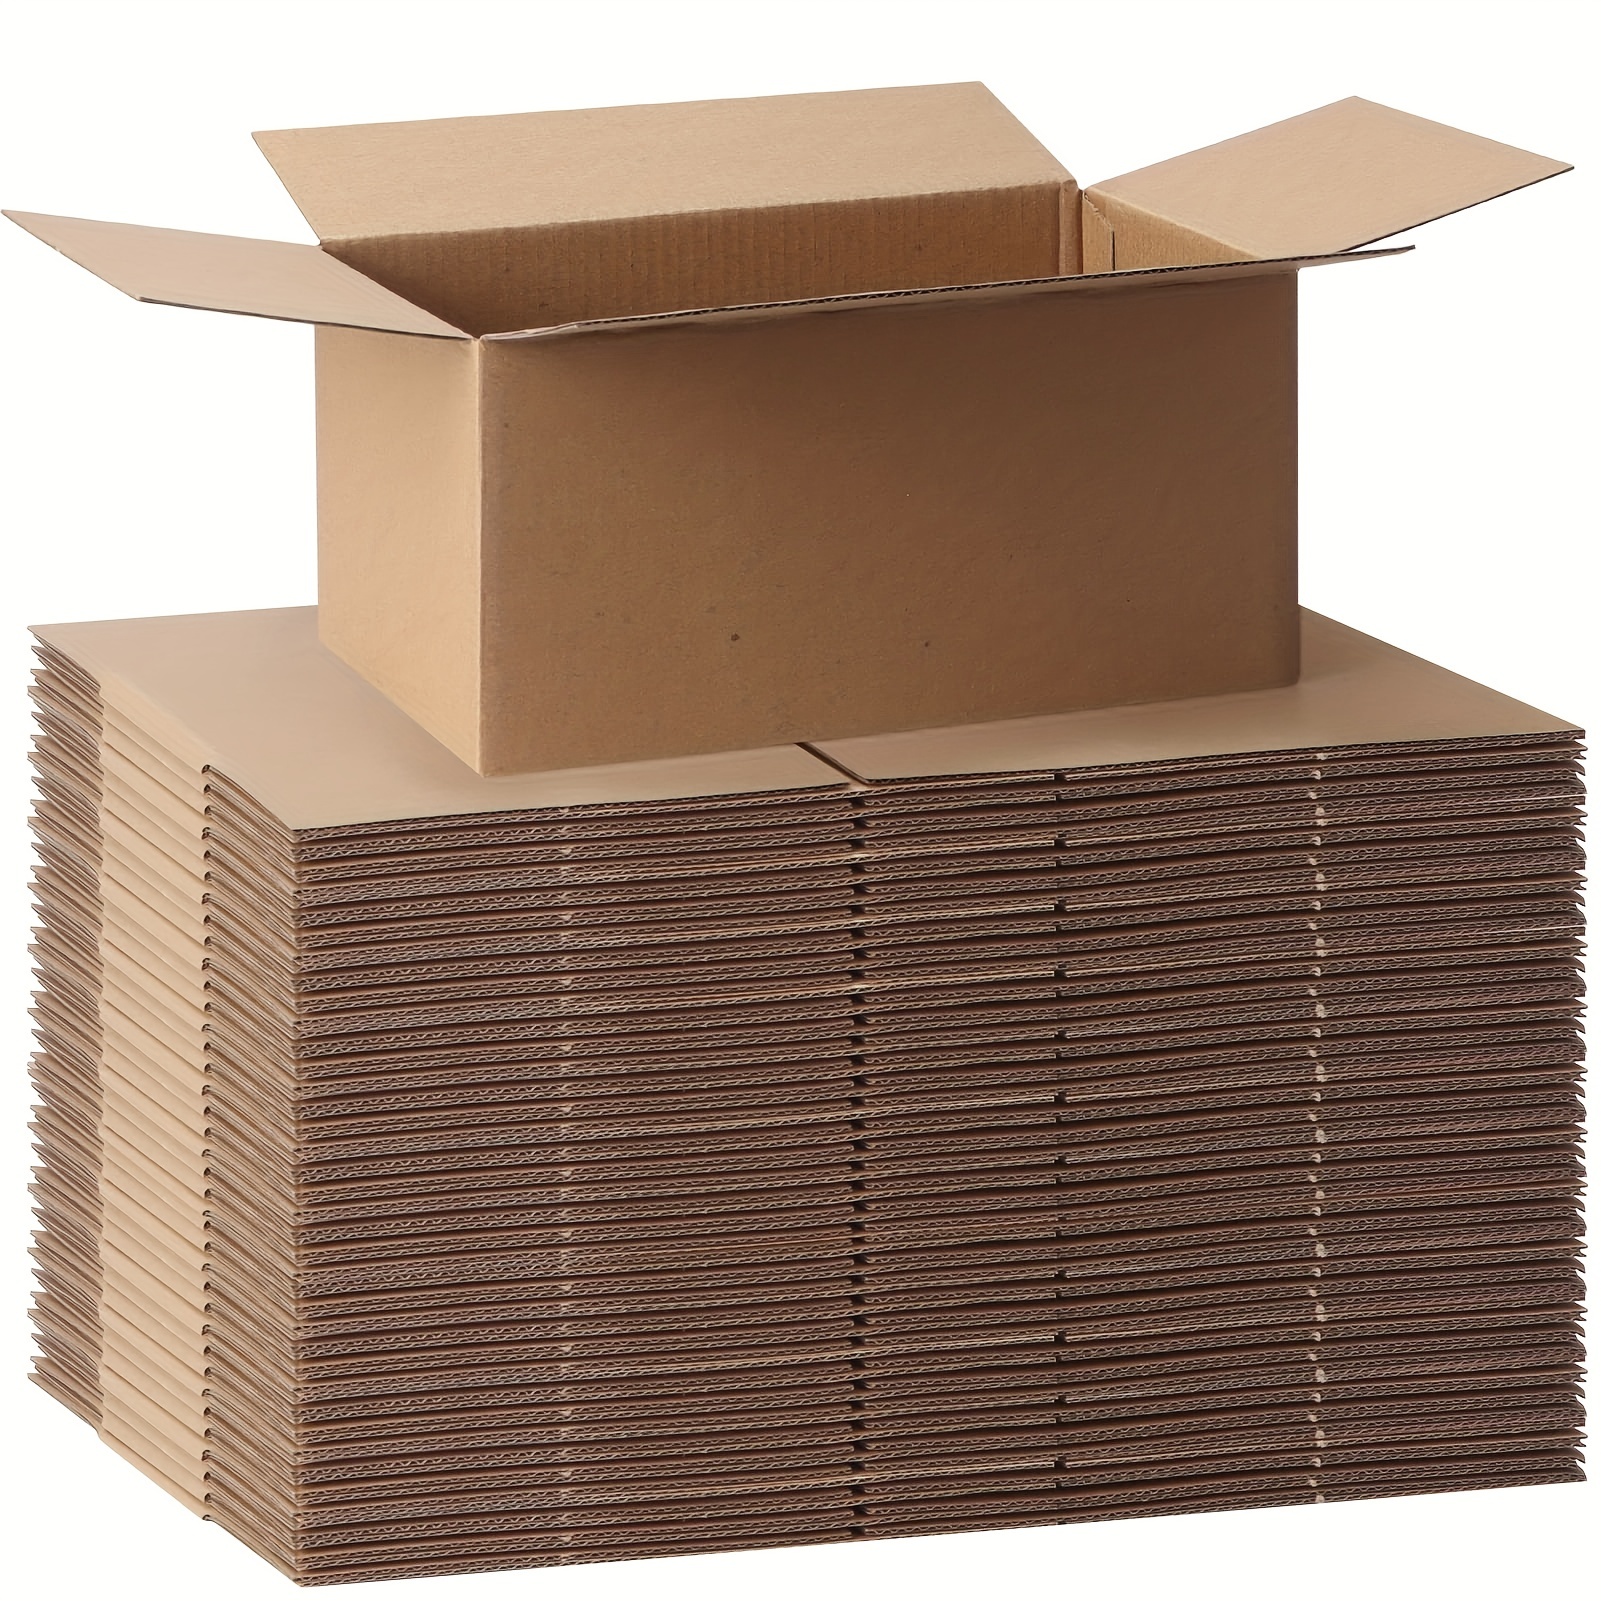 Caja de cartón embalaje 30x20x10 - La Fabrica de Carton